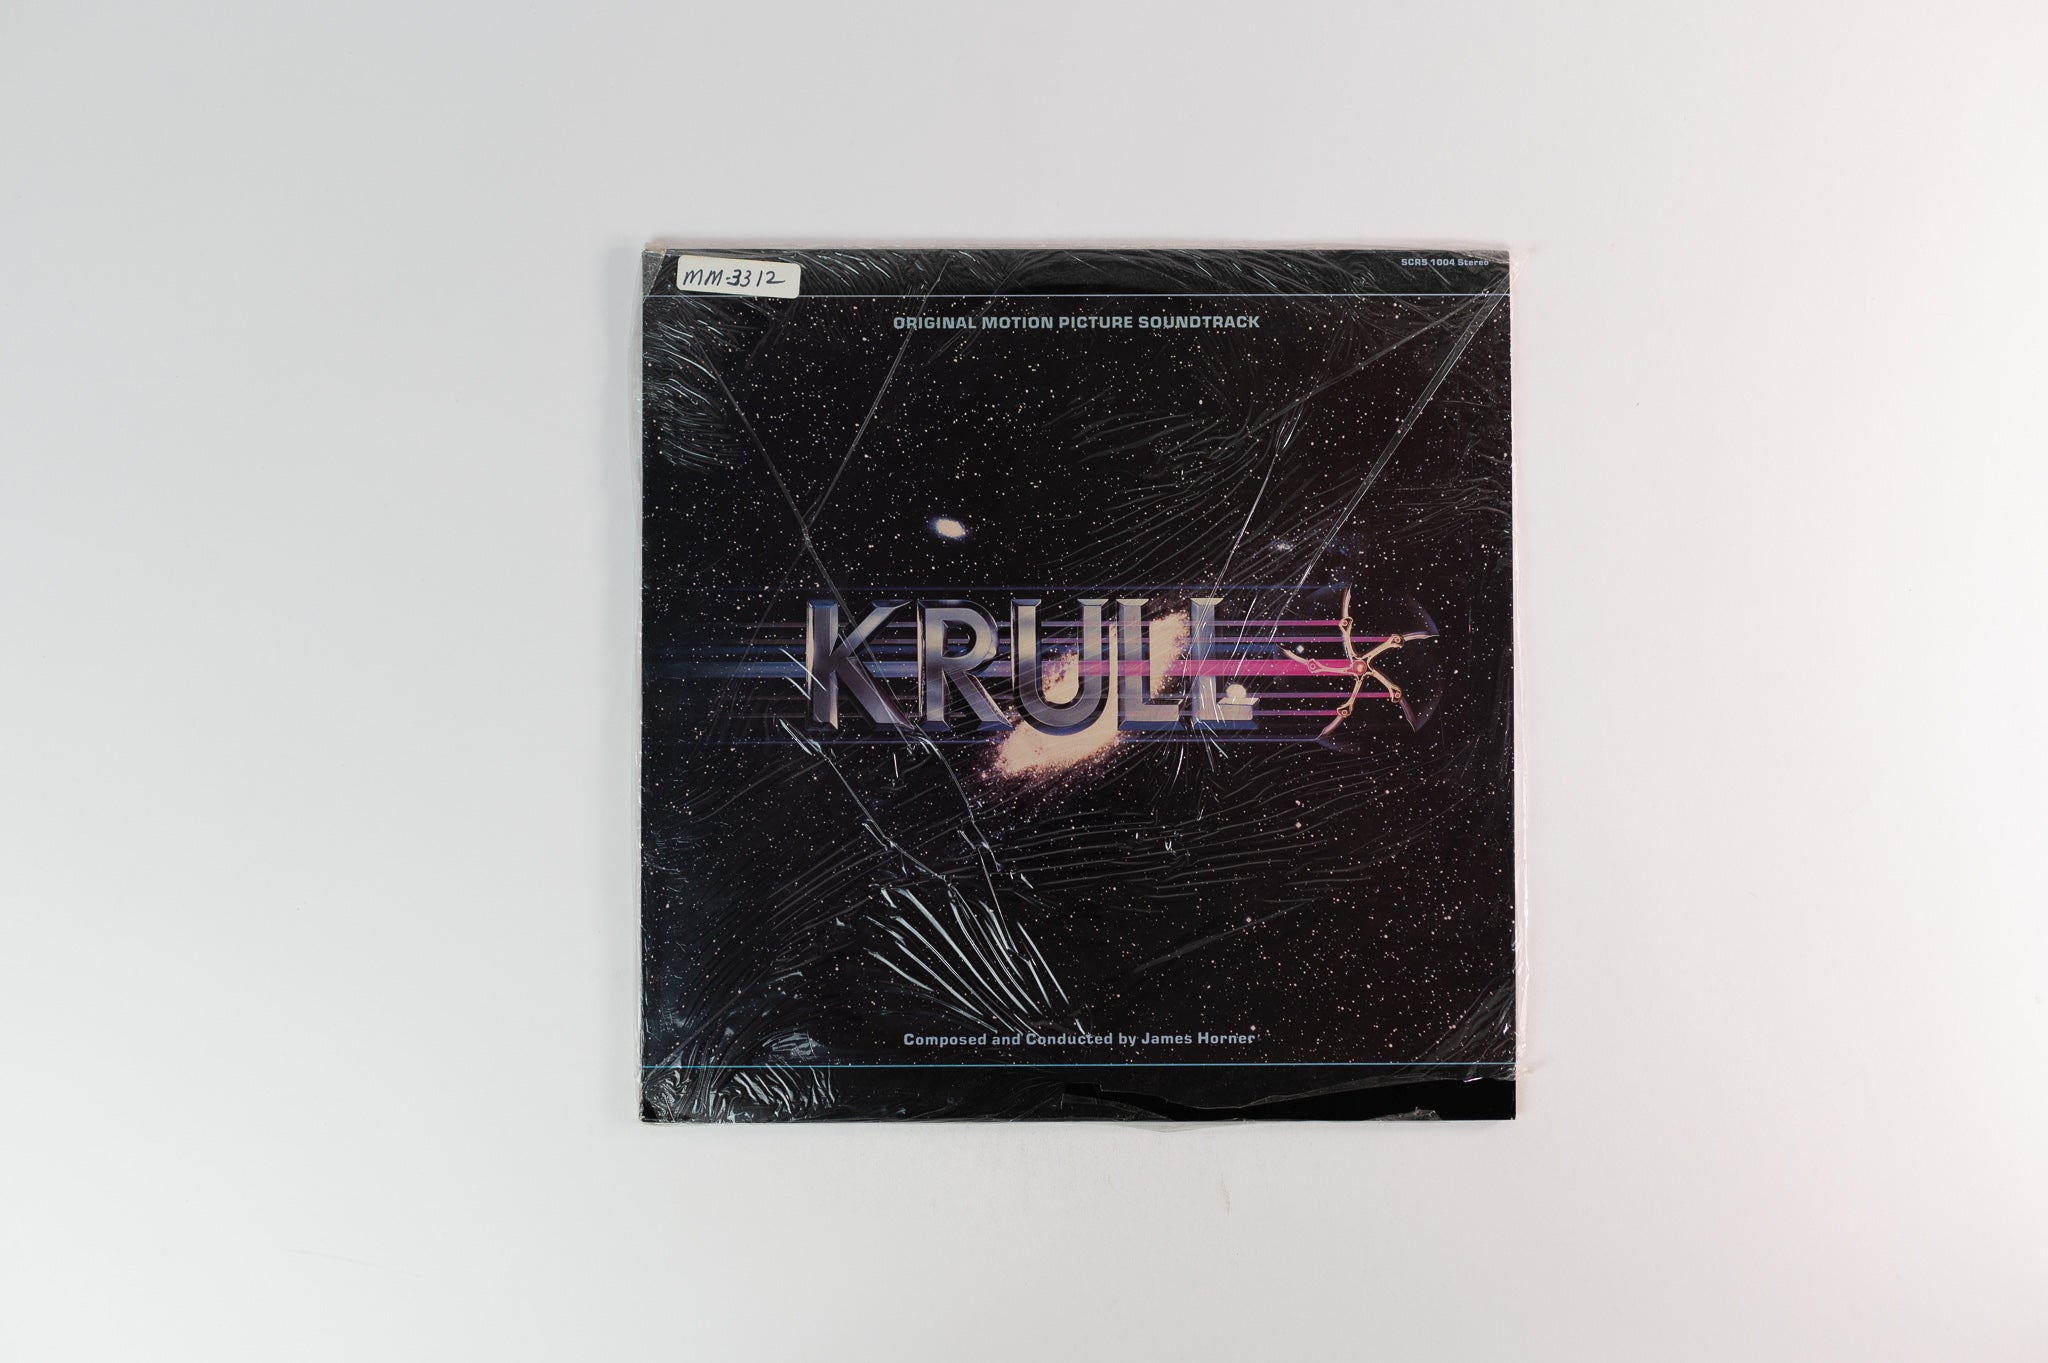 James Horner - Krull - Original Motion Picture Soundtrack on Southern Cross Sealed